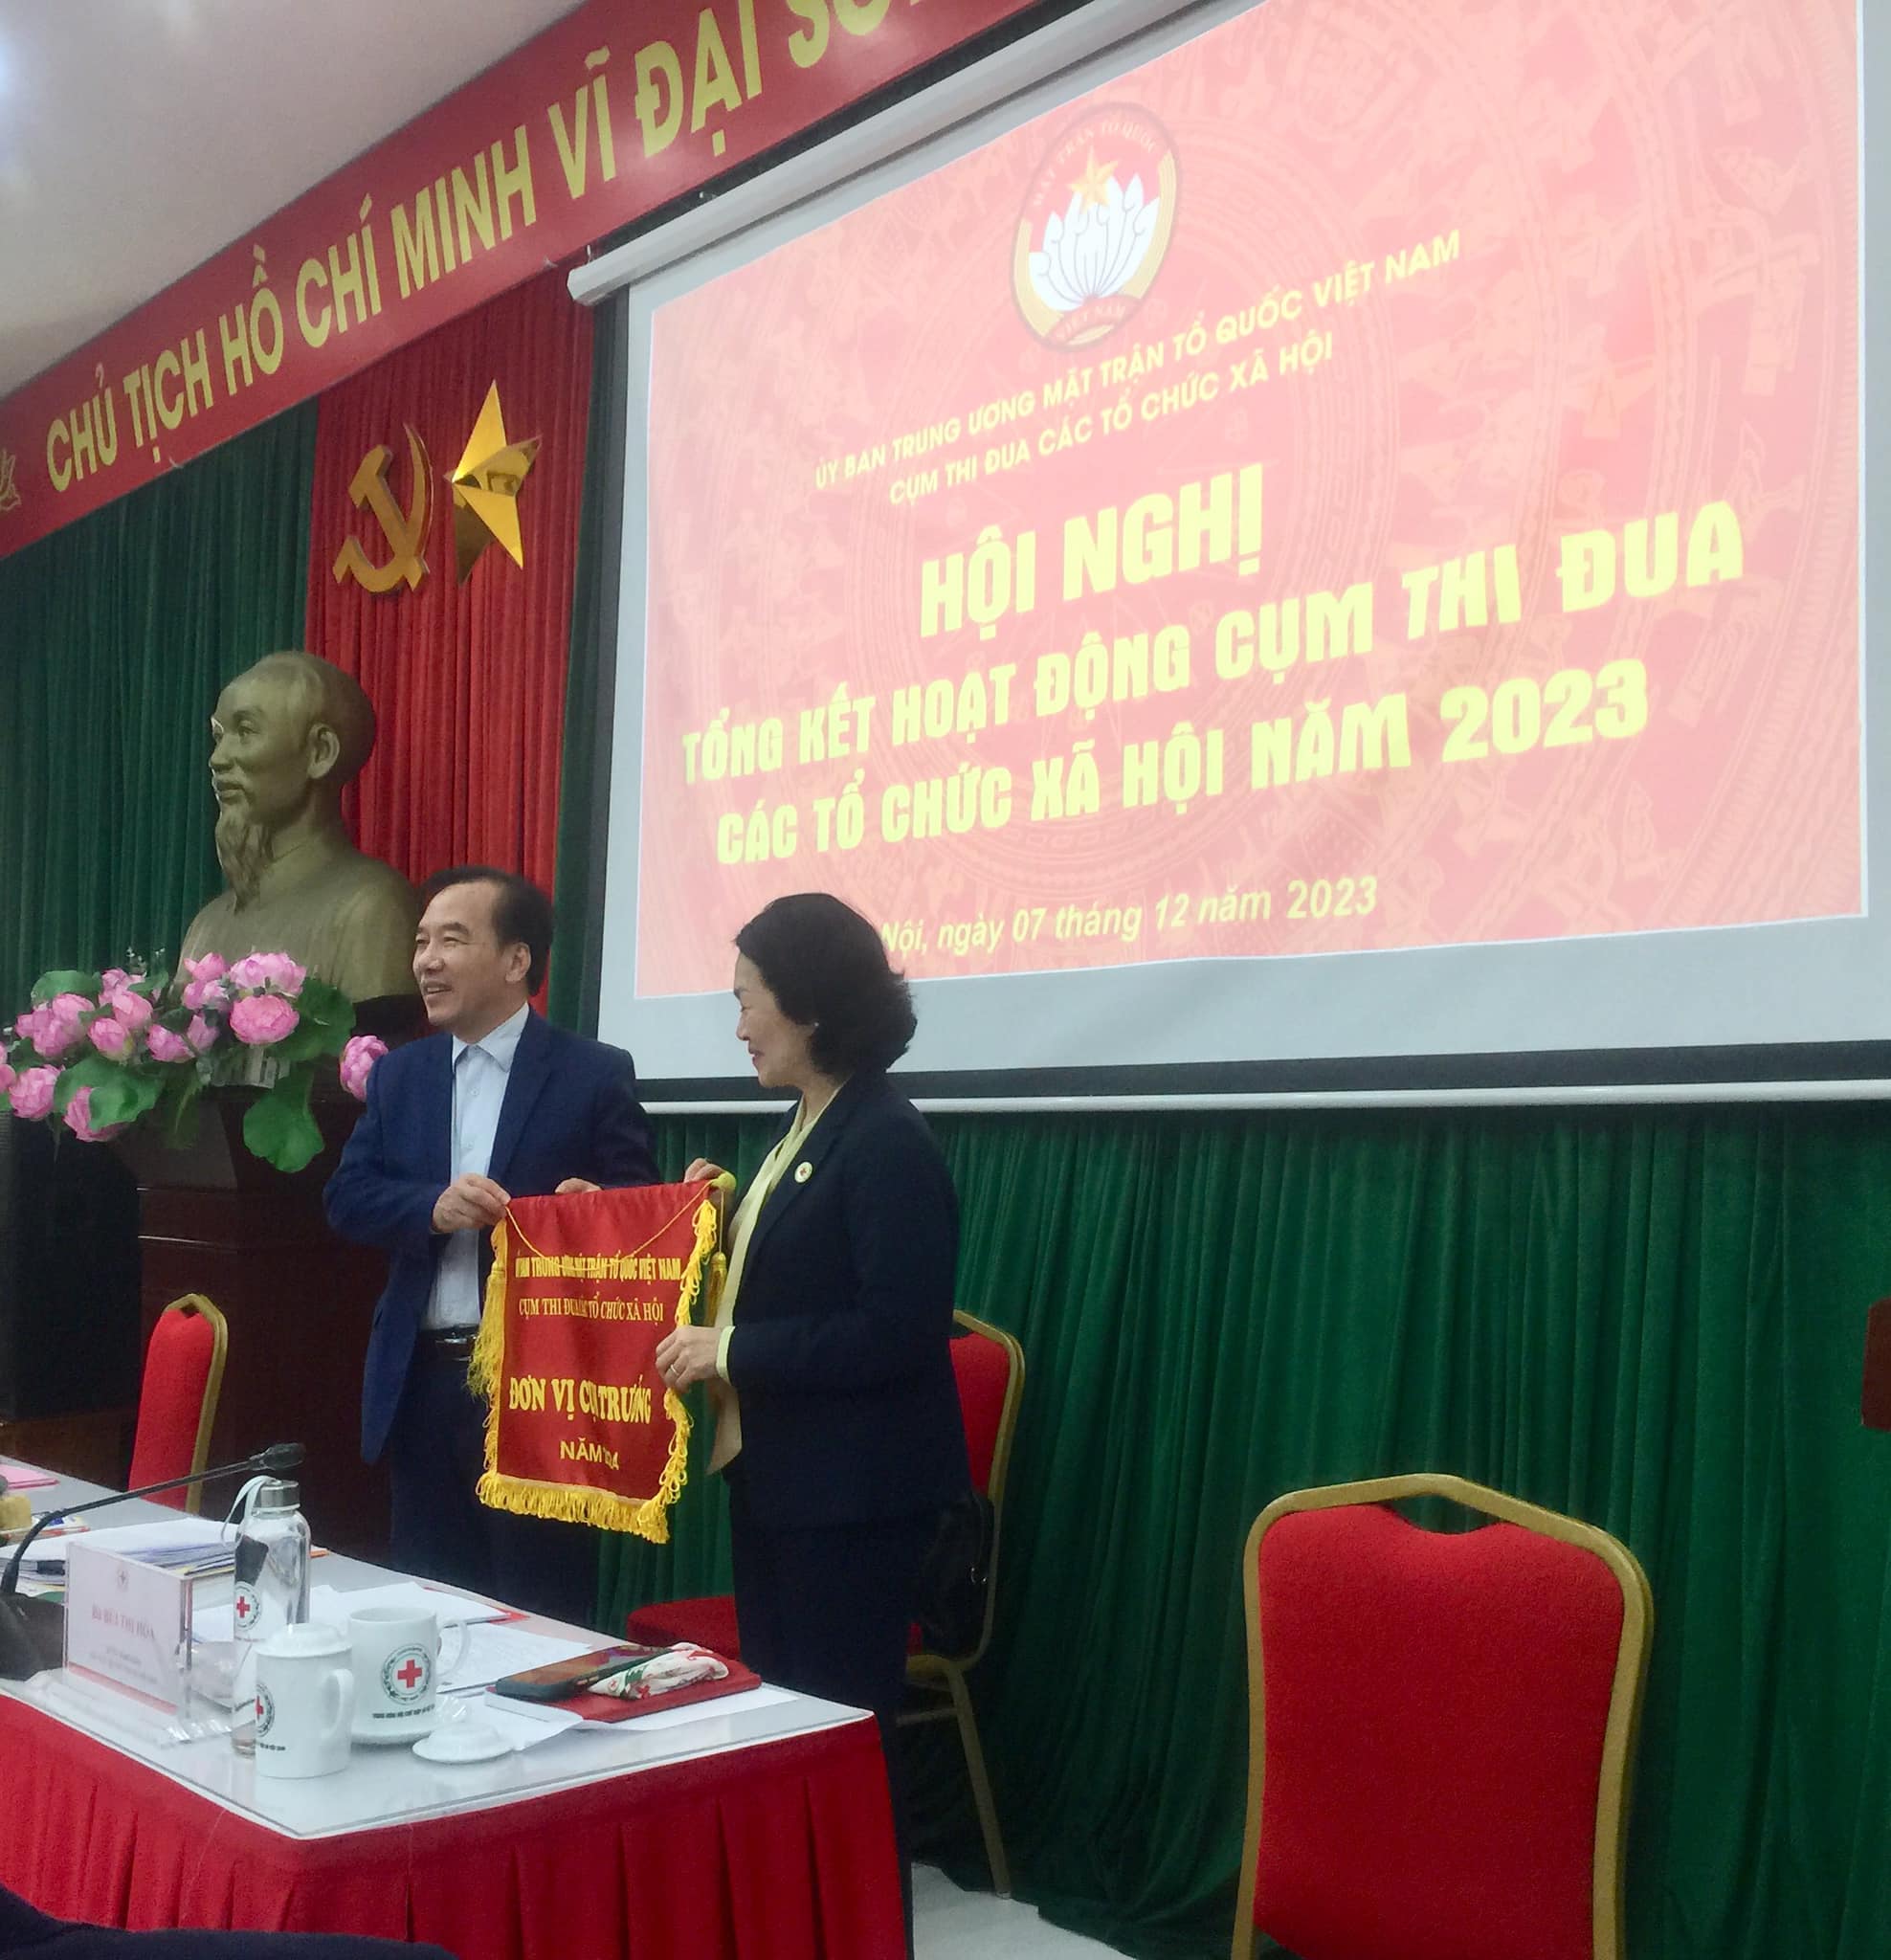 Hội Trường Sơn Việt Nam dự tổng kết cụm thi đua các tổ chức xã hội khu vực Hà Nội năm 2023